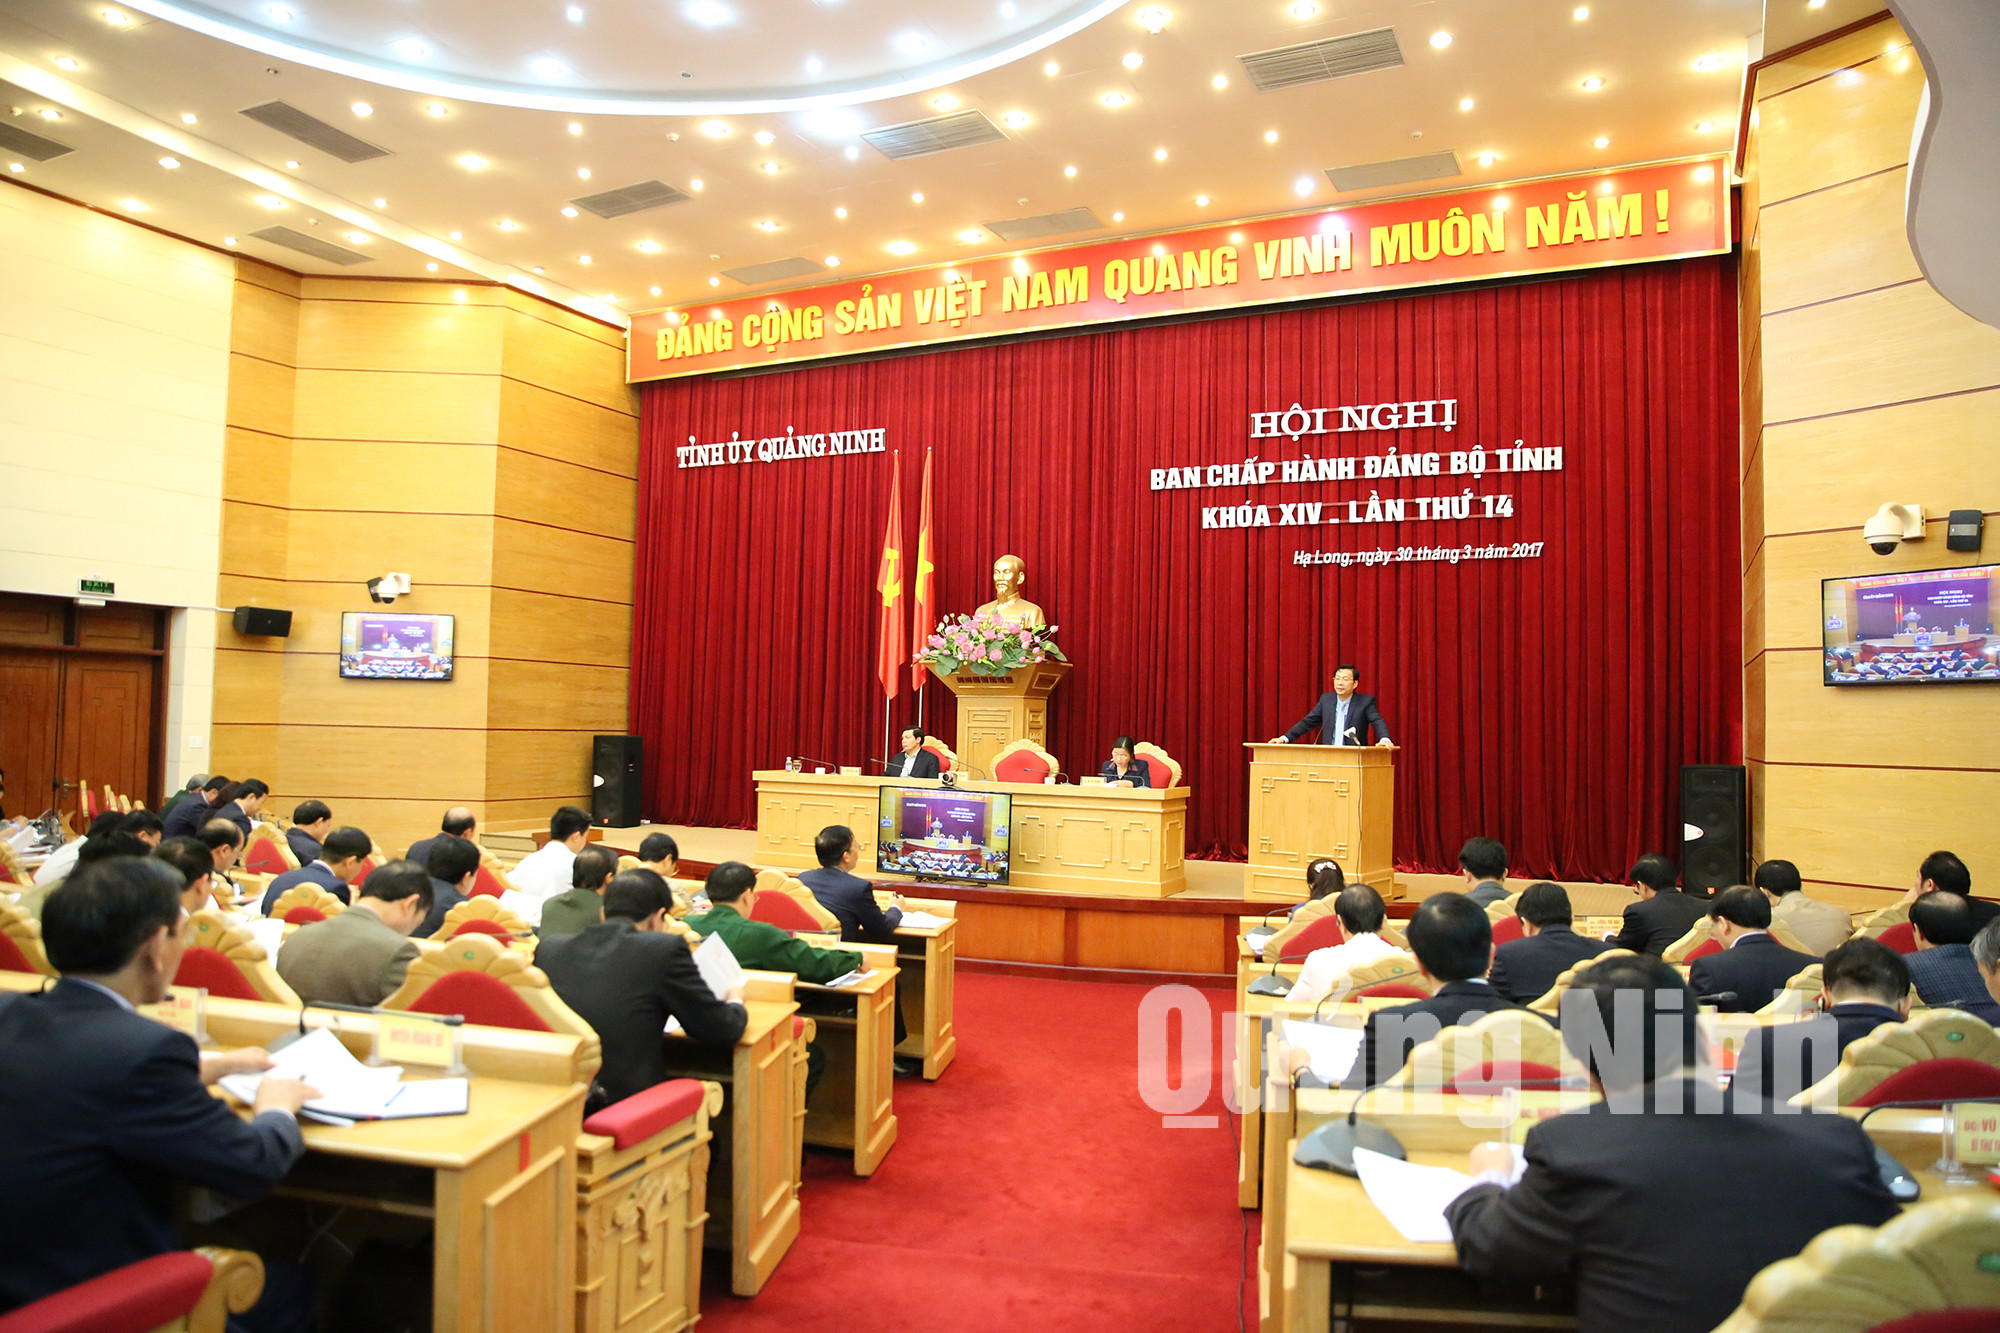 Hội nghị Ban Chấp hành Đảng bộ tỉnh Khóa XIV lần thứ 14.